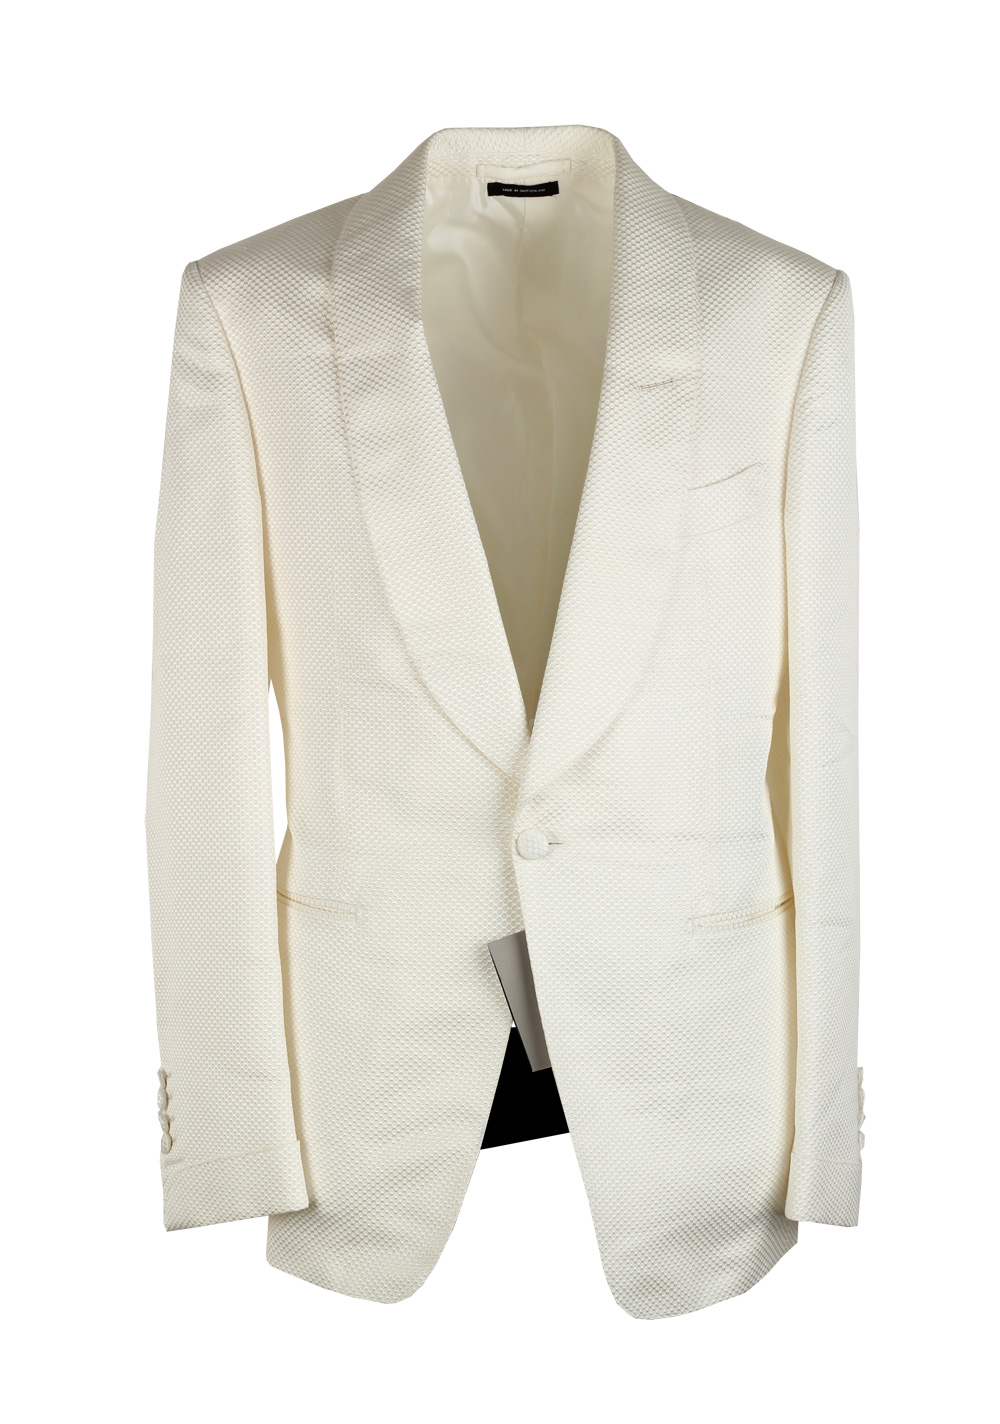 TOM FORD Shelton White Shawl Collar Sport Coat Tuxedo Dinner Jacket ...